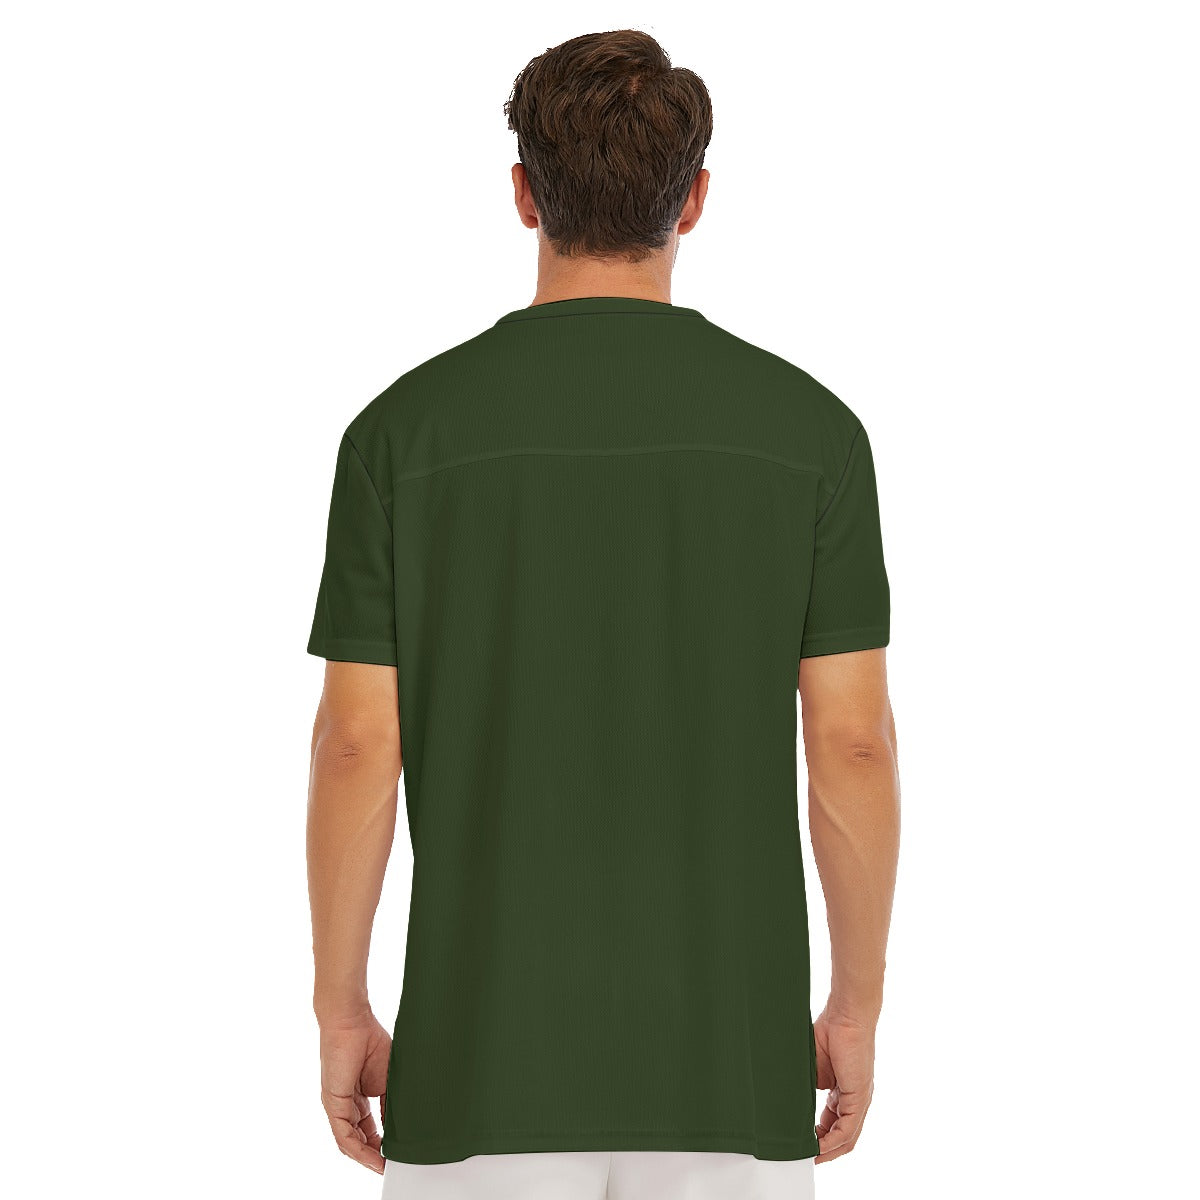 All-Over Print Men's V-neck Short Sleeve T-shirt